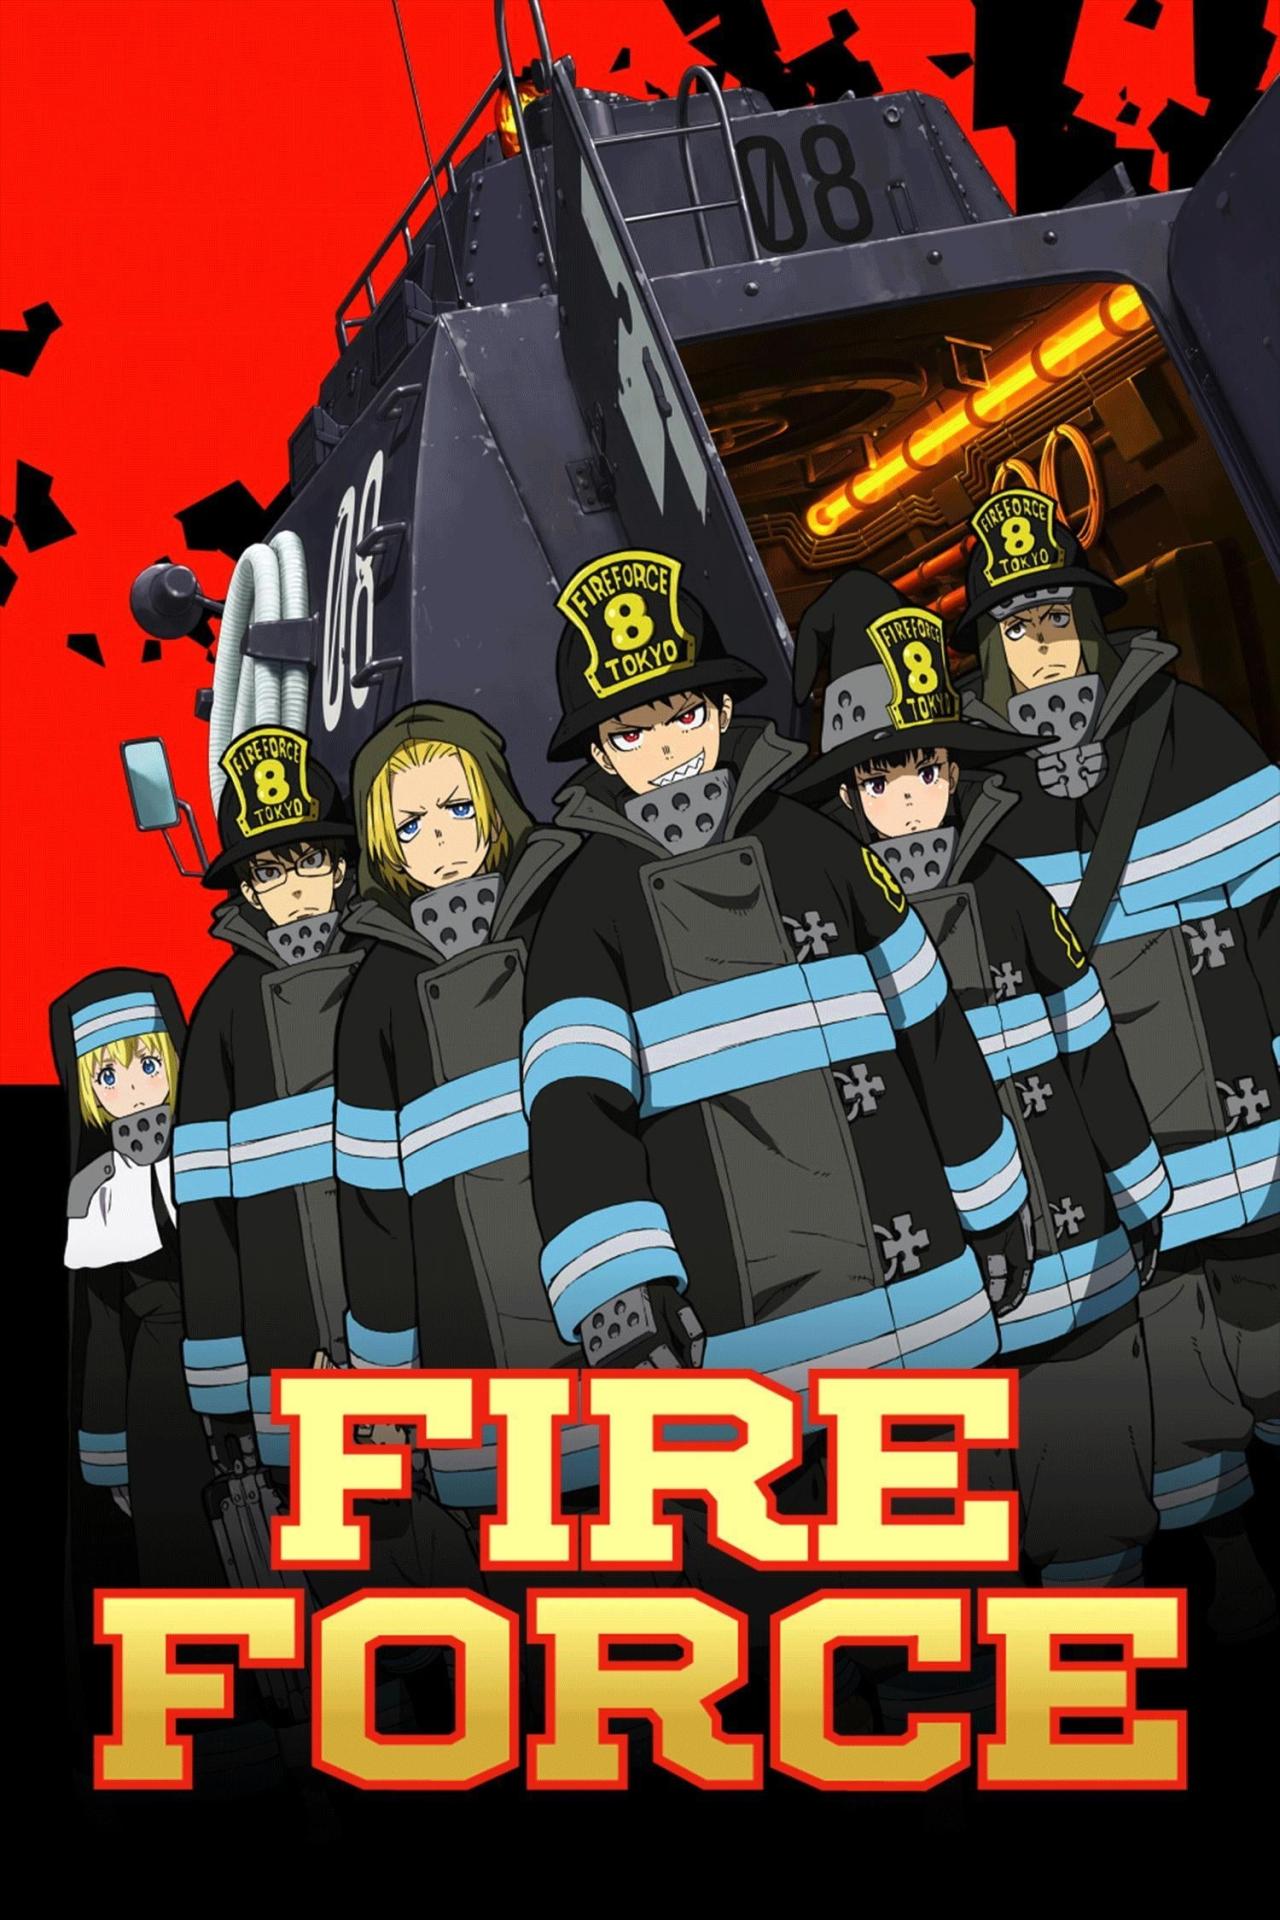 Affiche de la série Fire Force